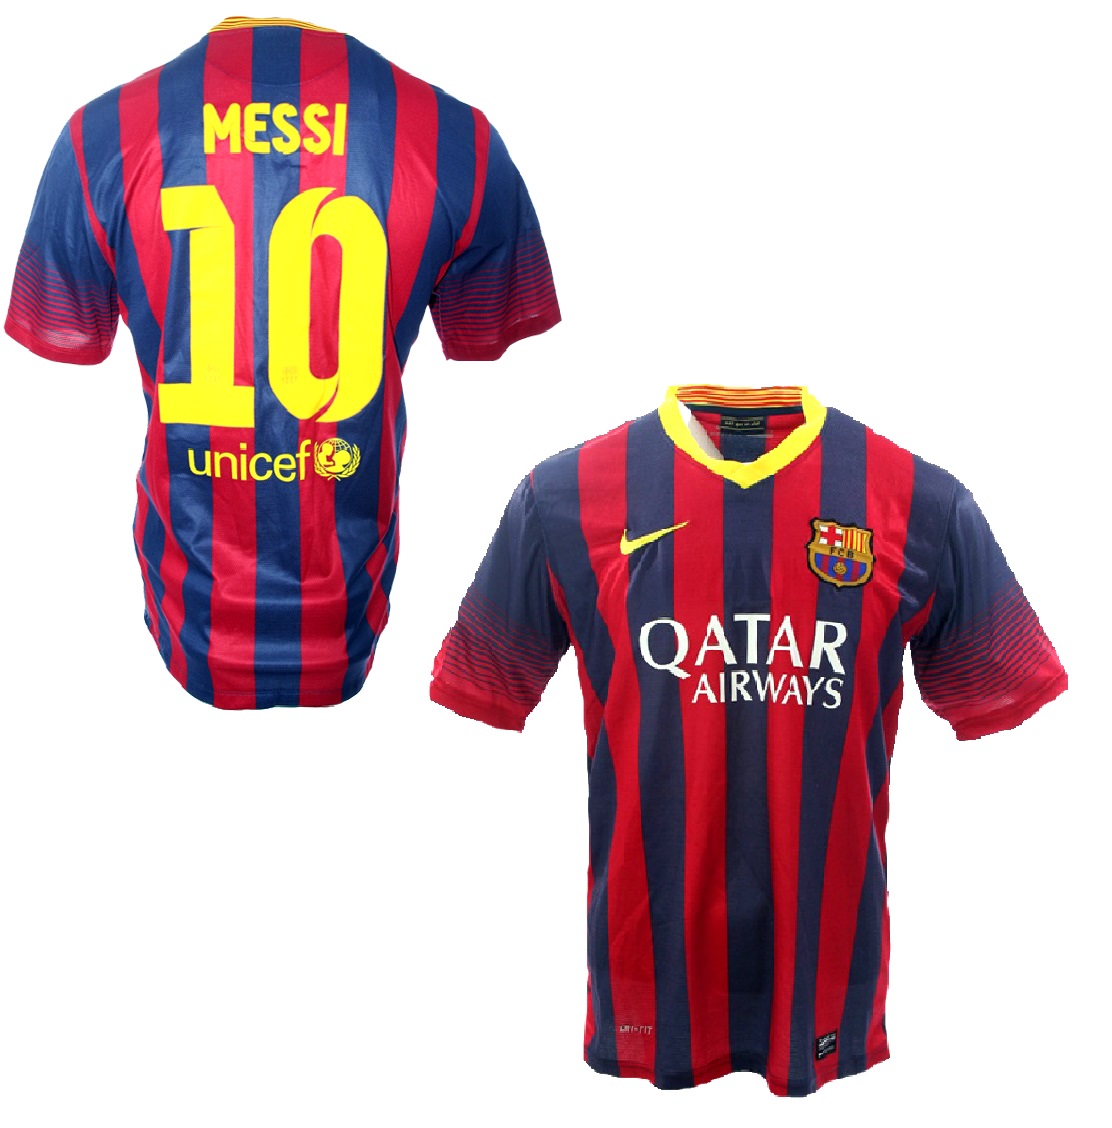 Nike Fc Barcelona Trikot 10 Messi 2013 14 Qatar Home Herren S M L Xl Xxl Gunstig Online Kaufen Bestellen Shop Spieler Trikot De Marktplatz Retro Vintage Fussball Trikots Von Superstars